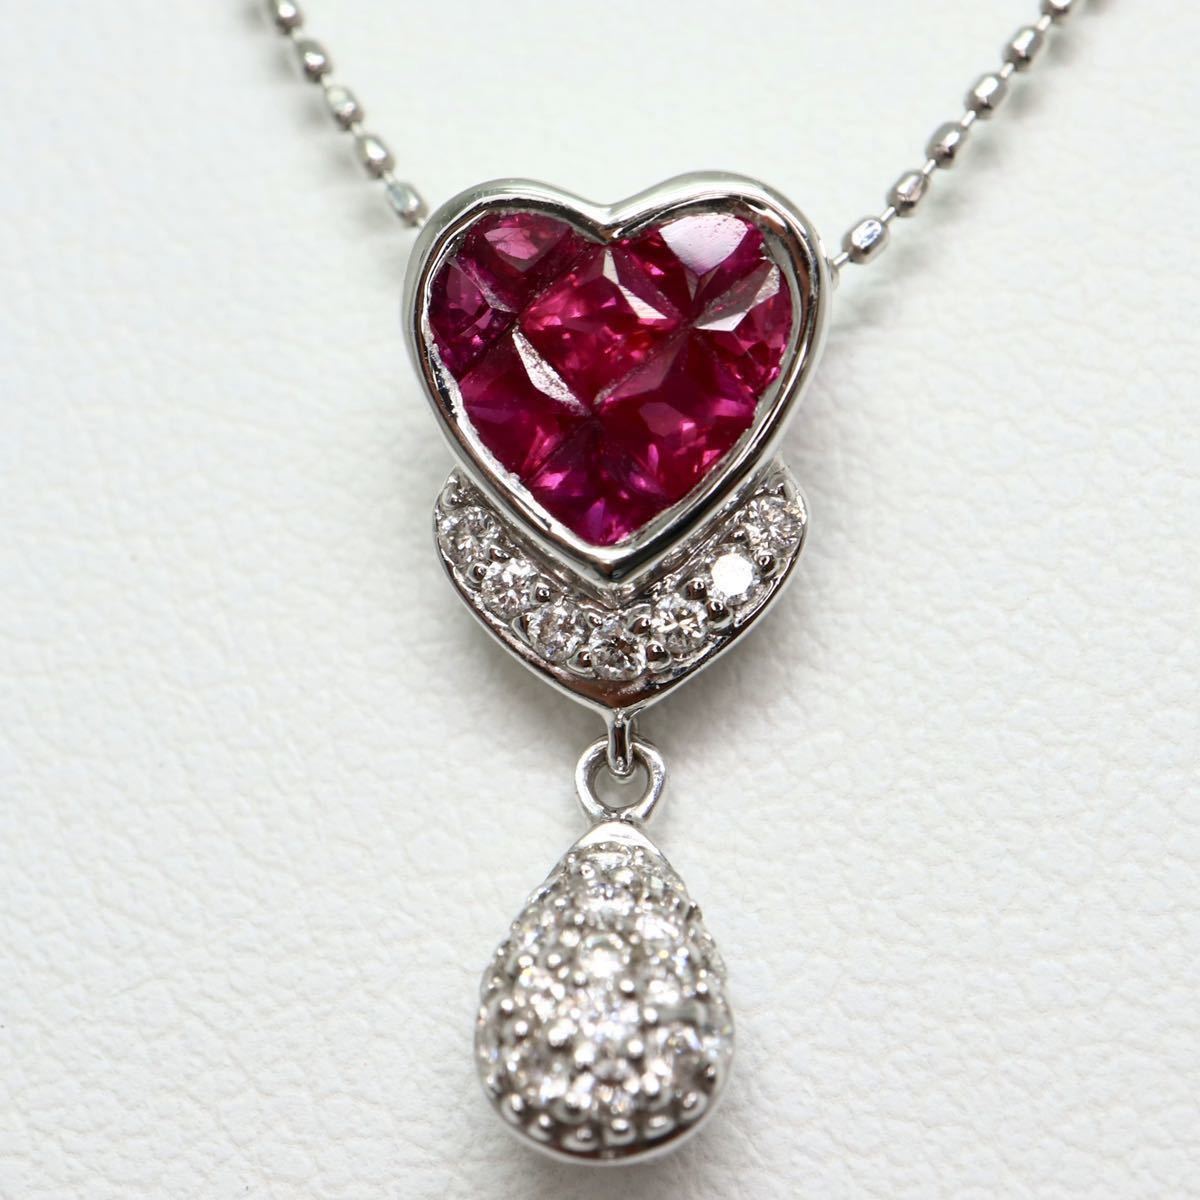 ソーティング付き!!《K18WG天然ダイヤモンド/天然ルビーネックレス》F 約2.9g 約45cm 0.73ct 0.16ct diamond jewelry necklace EB3/EB4